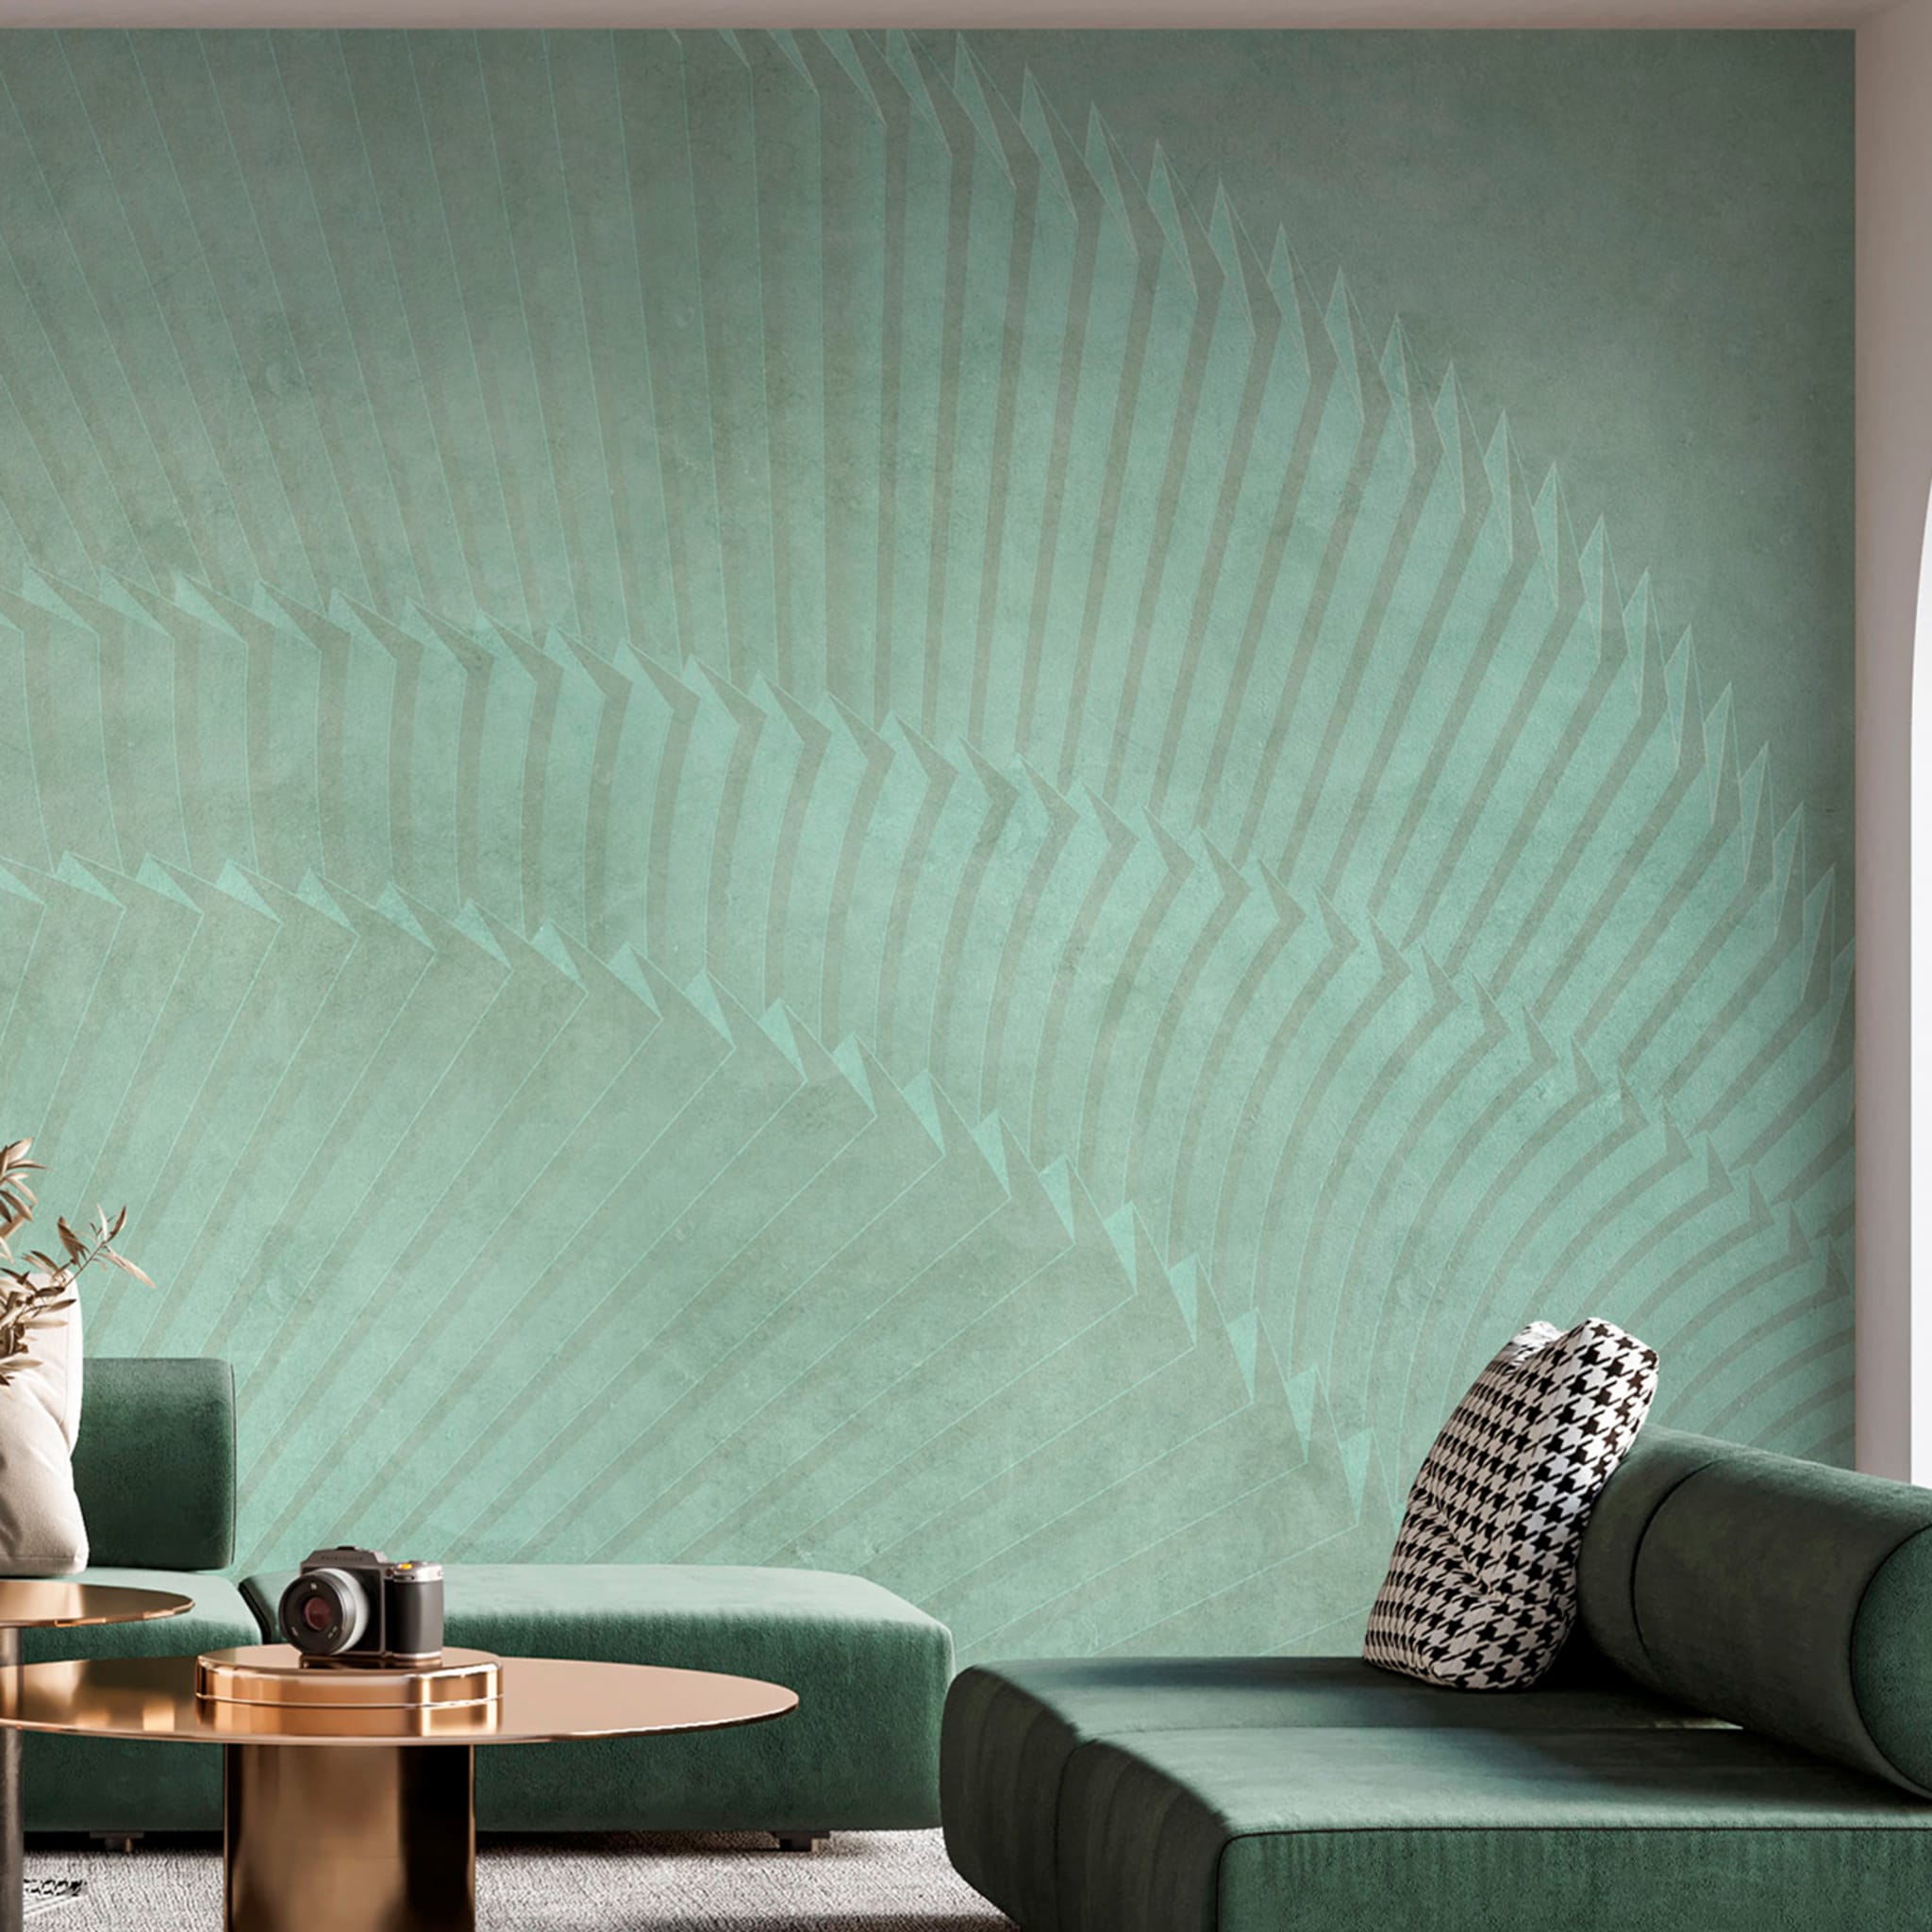 Green Fan horizontal plissé wallpaper - Alternative view 2